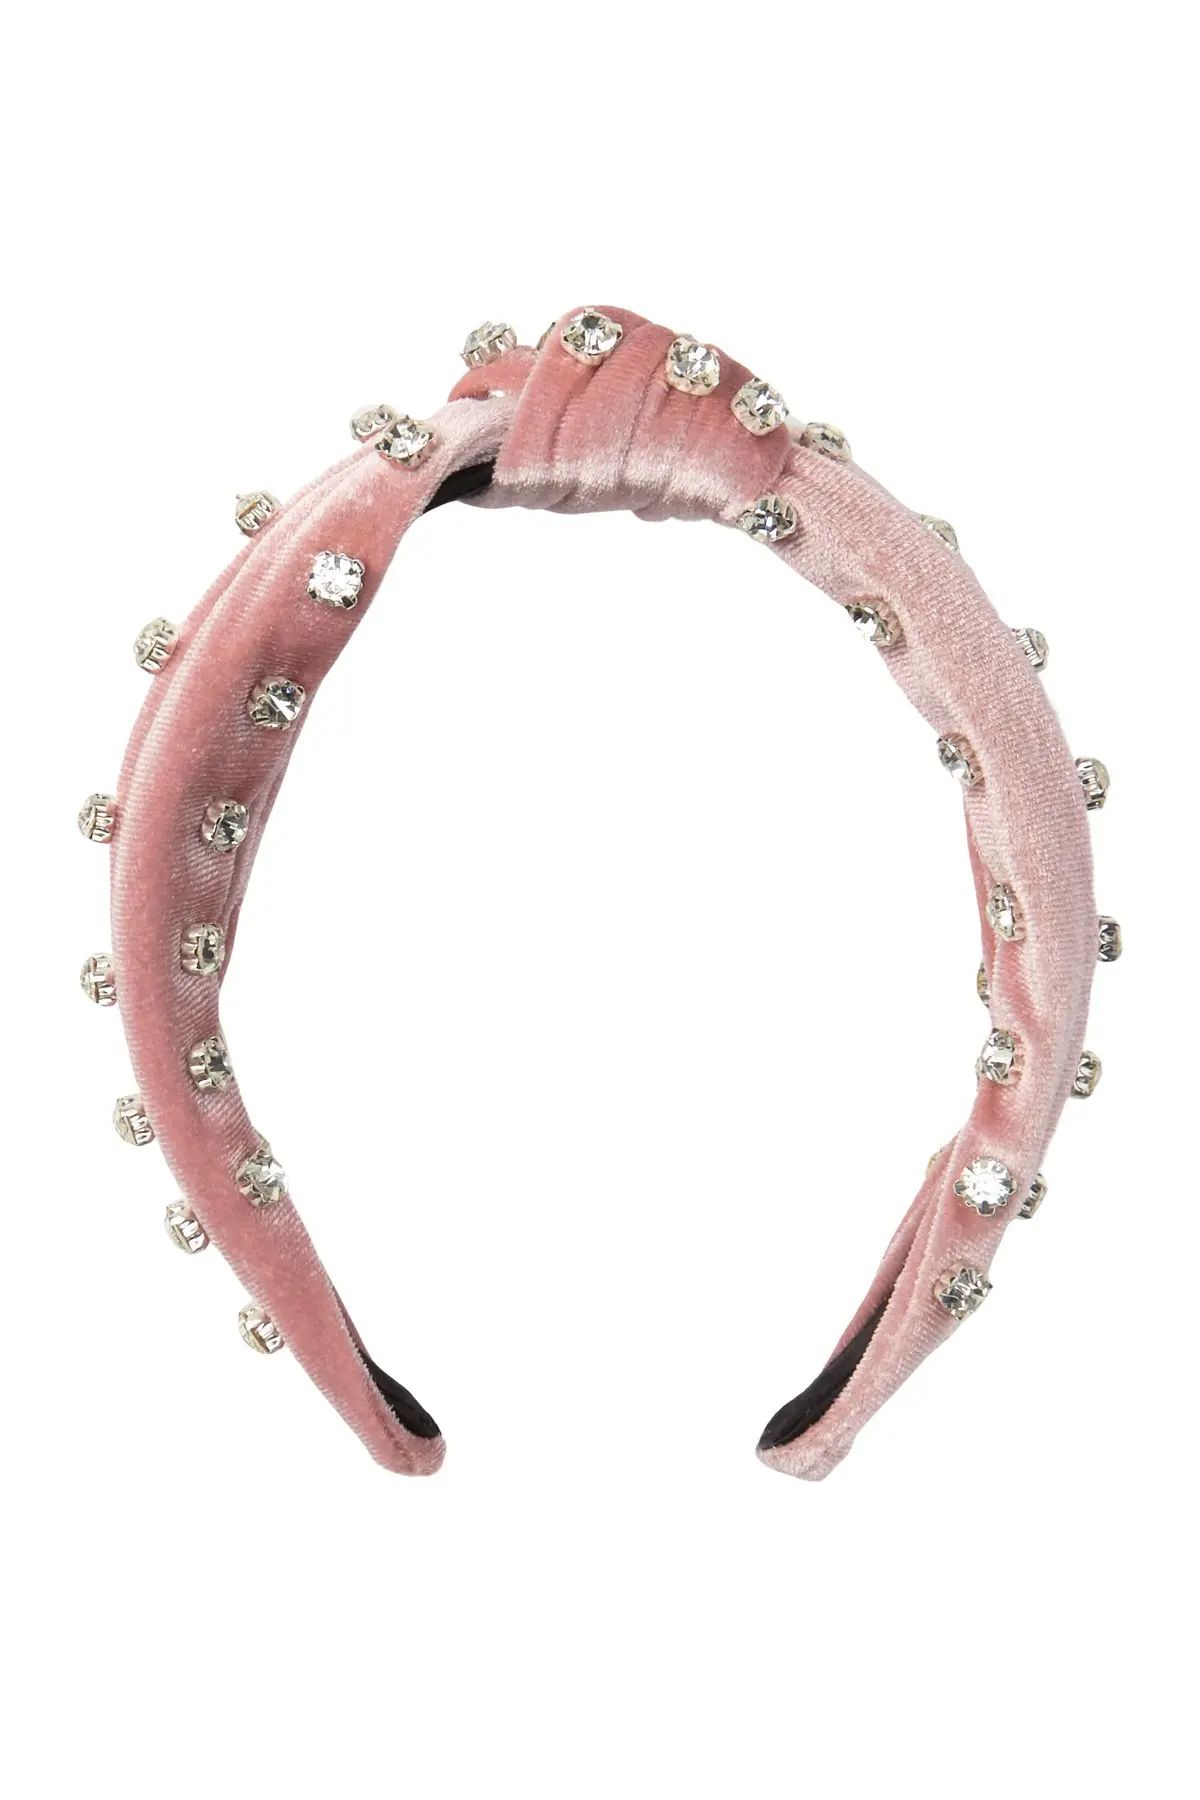 Cara Accessories Velvet Jewel Top Knot Headband at Nordstrom Rack | Nordstrom Rack